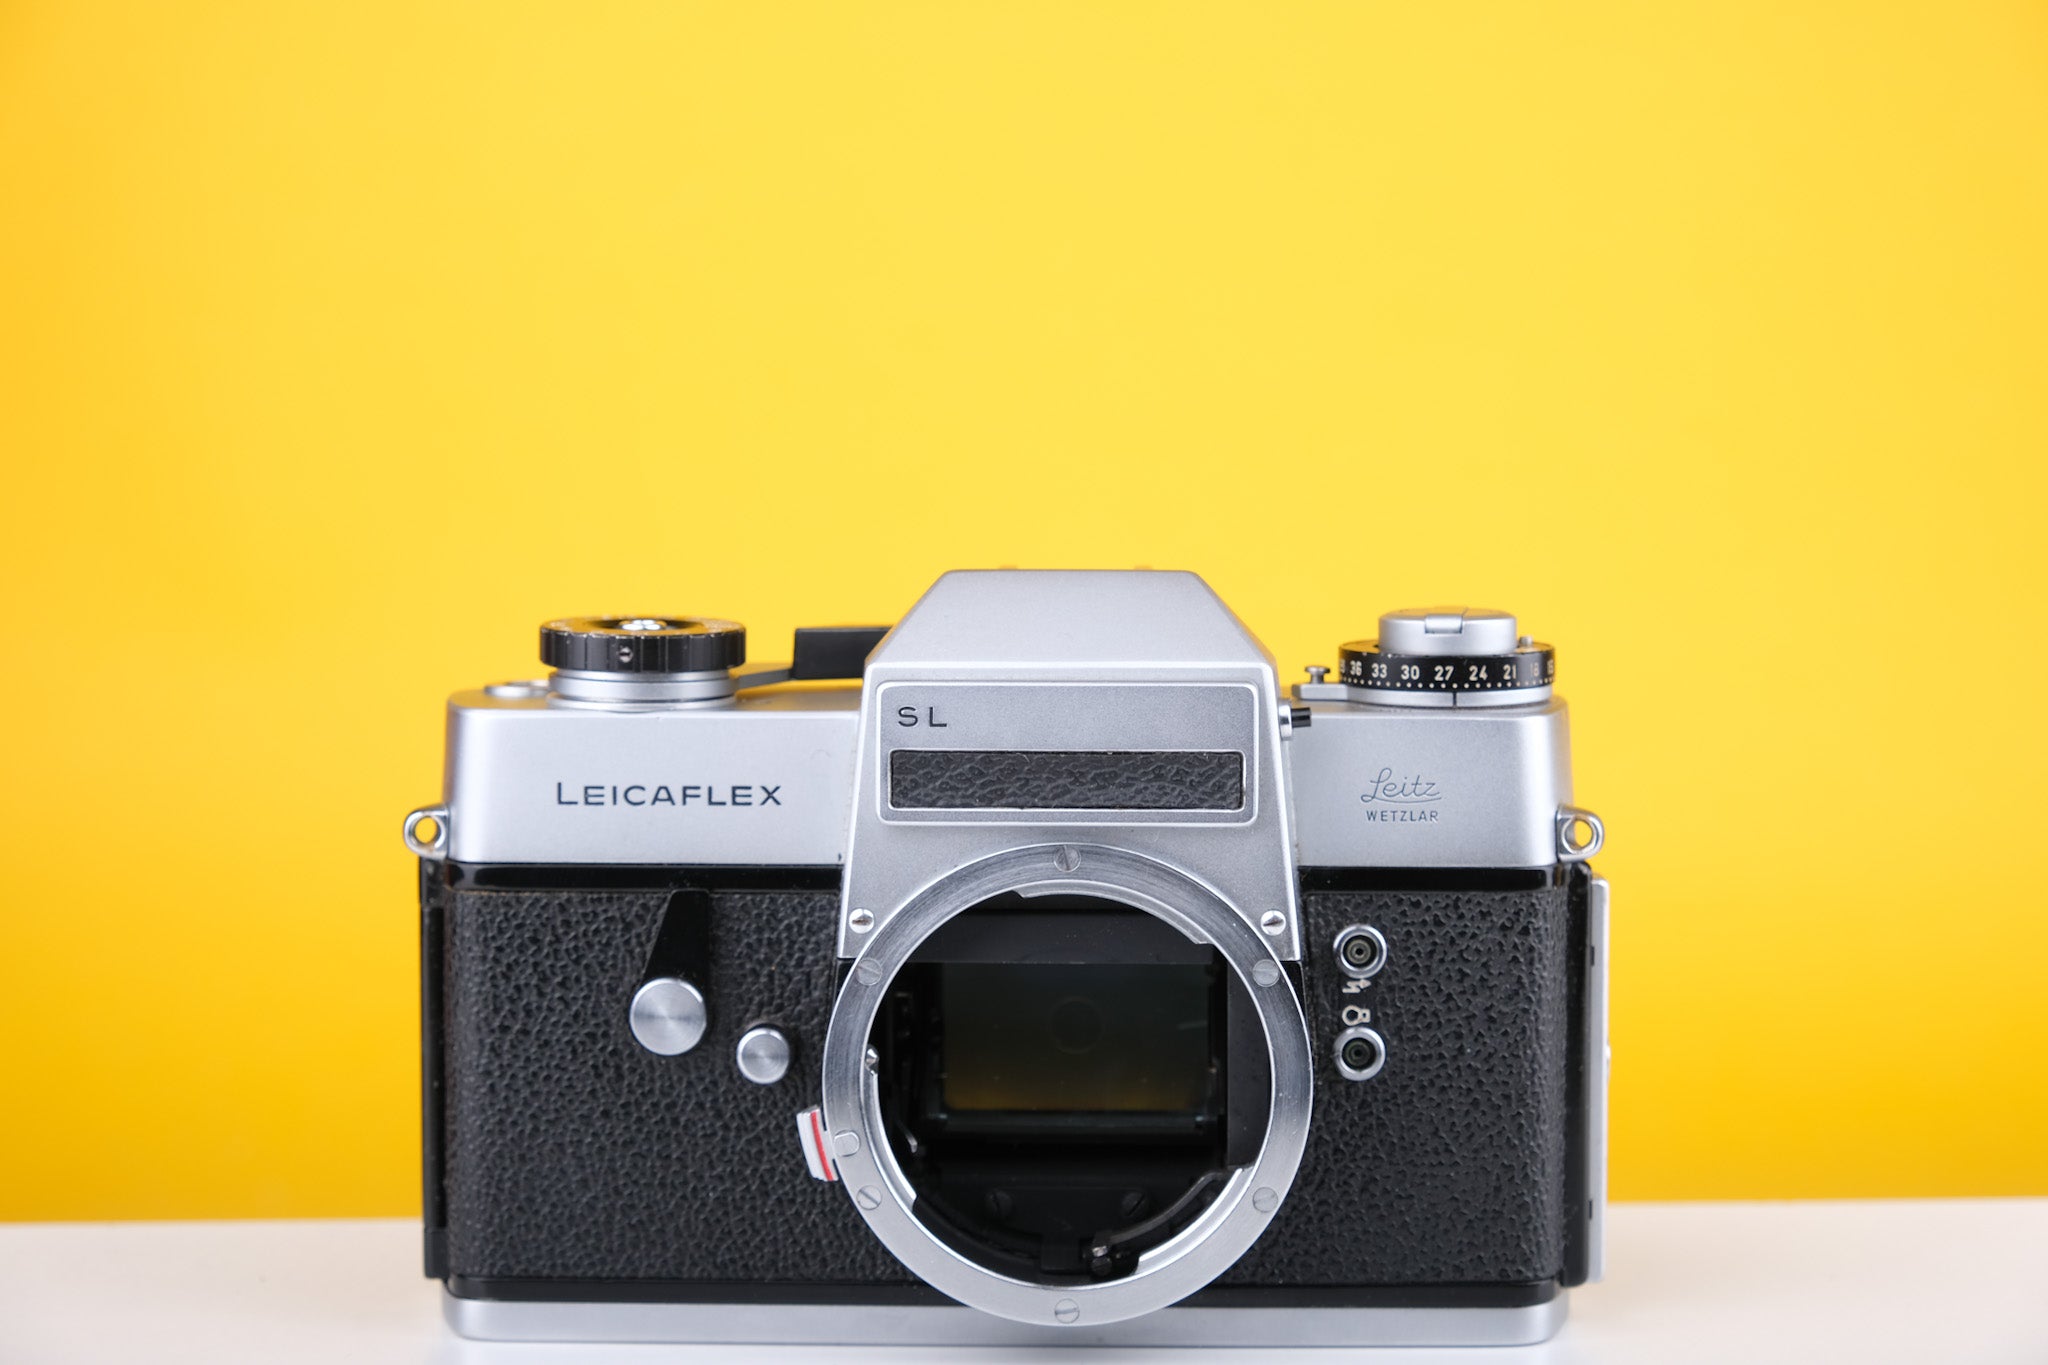 Leicaflex SL 35mm SLR Film Camera Body